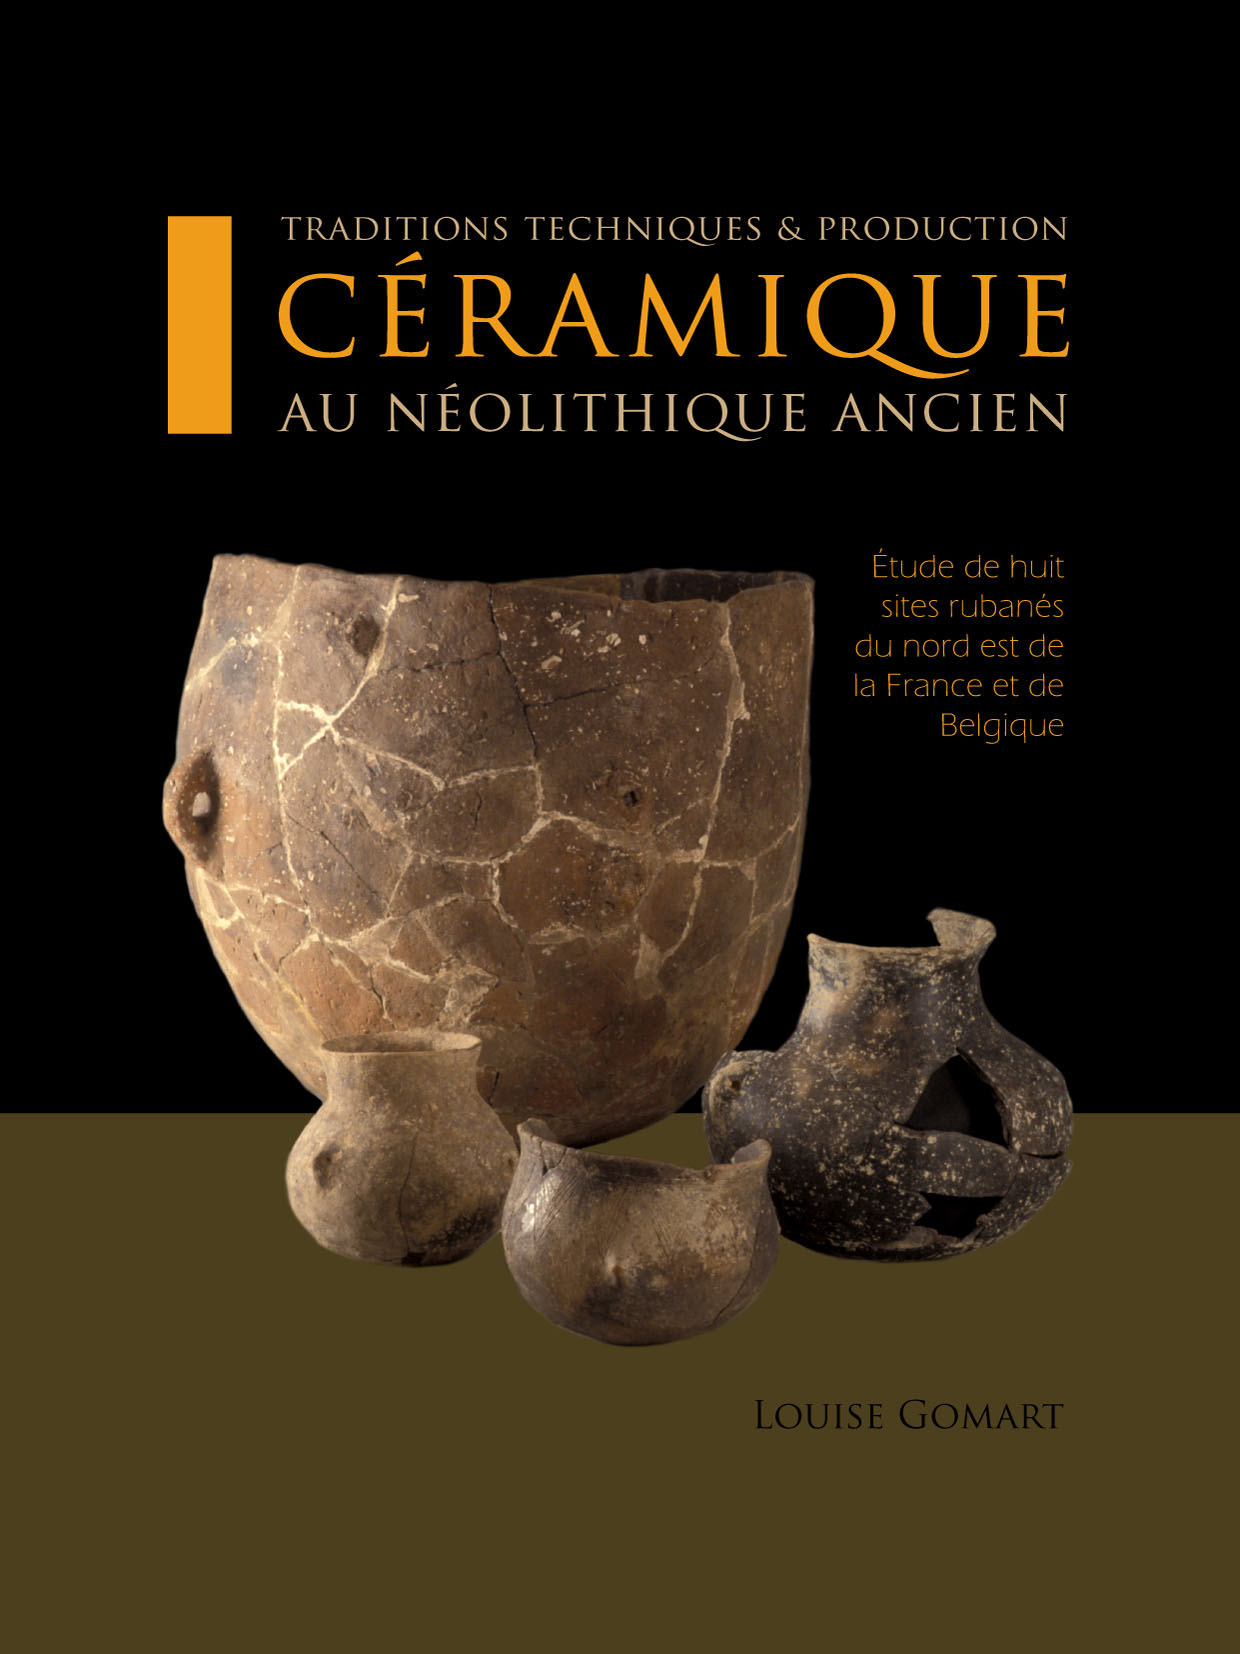 Les fondamentaux : histoire technique et culturelle de la céramique